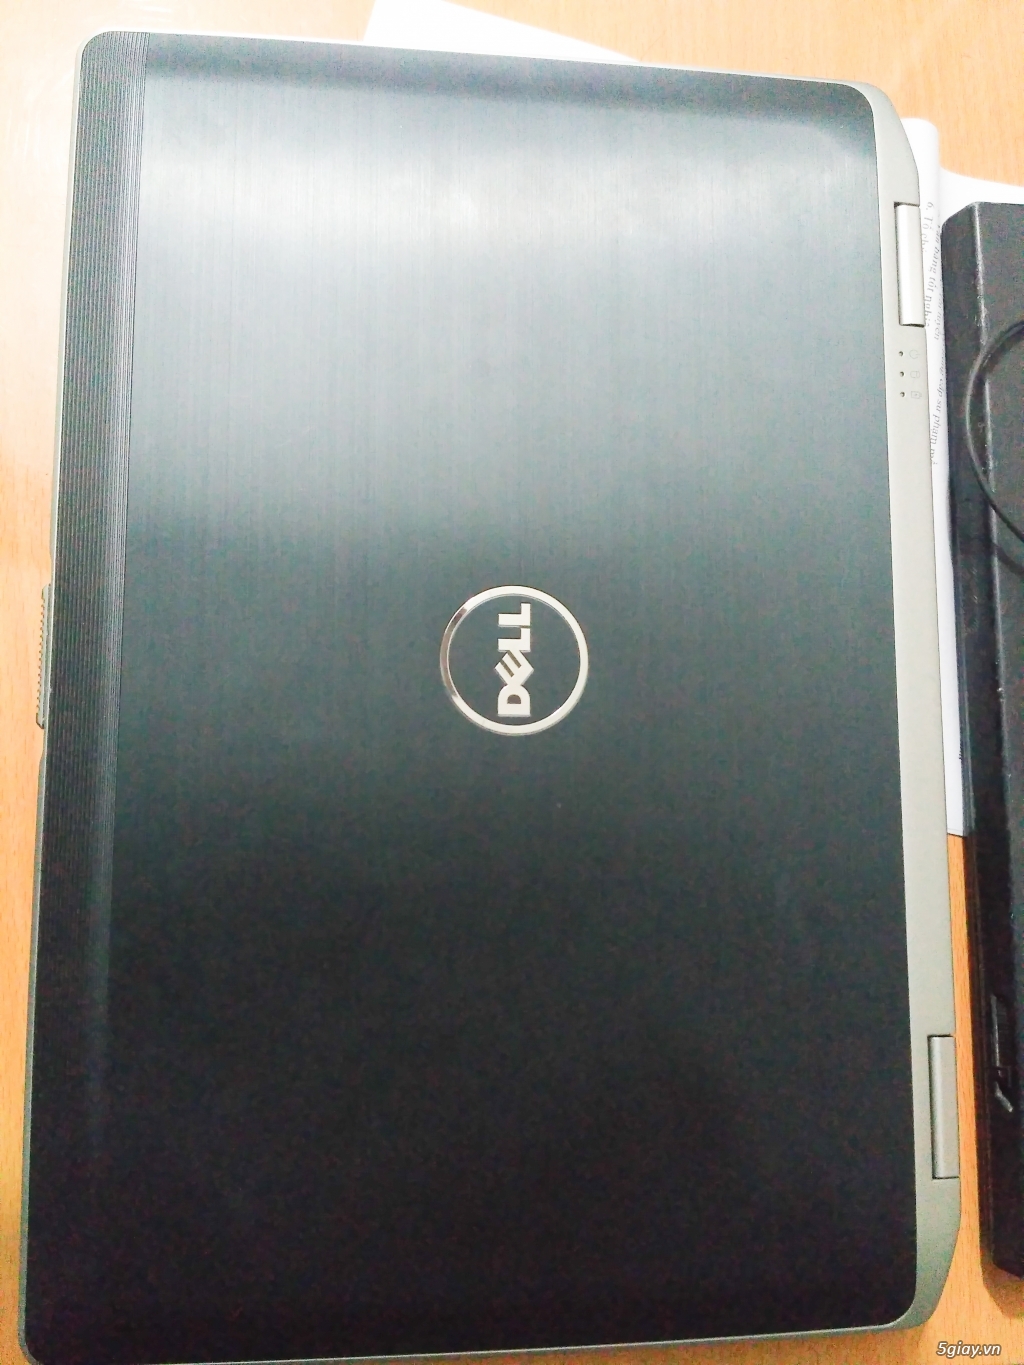 Thanh lý laptop văn phòng doanh nhân Dell E6420 - 1